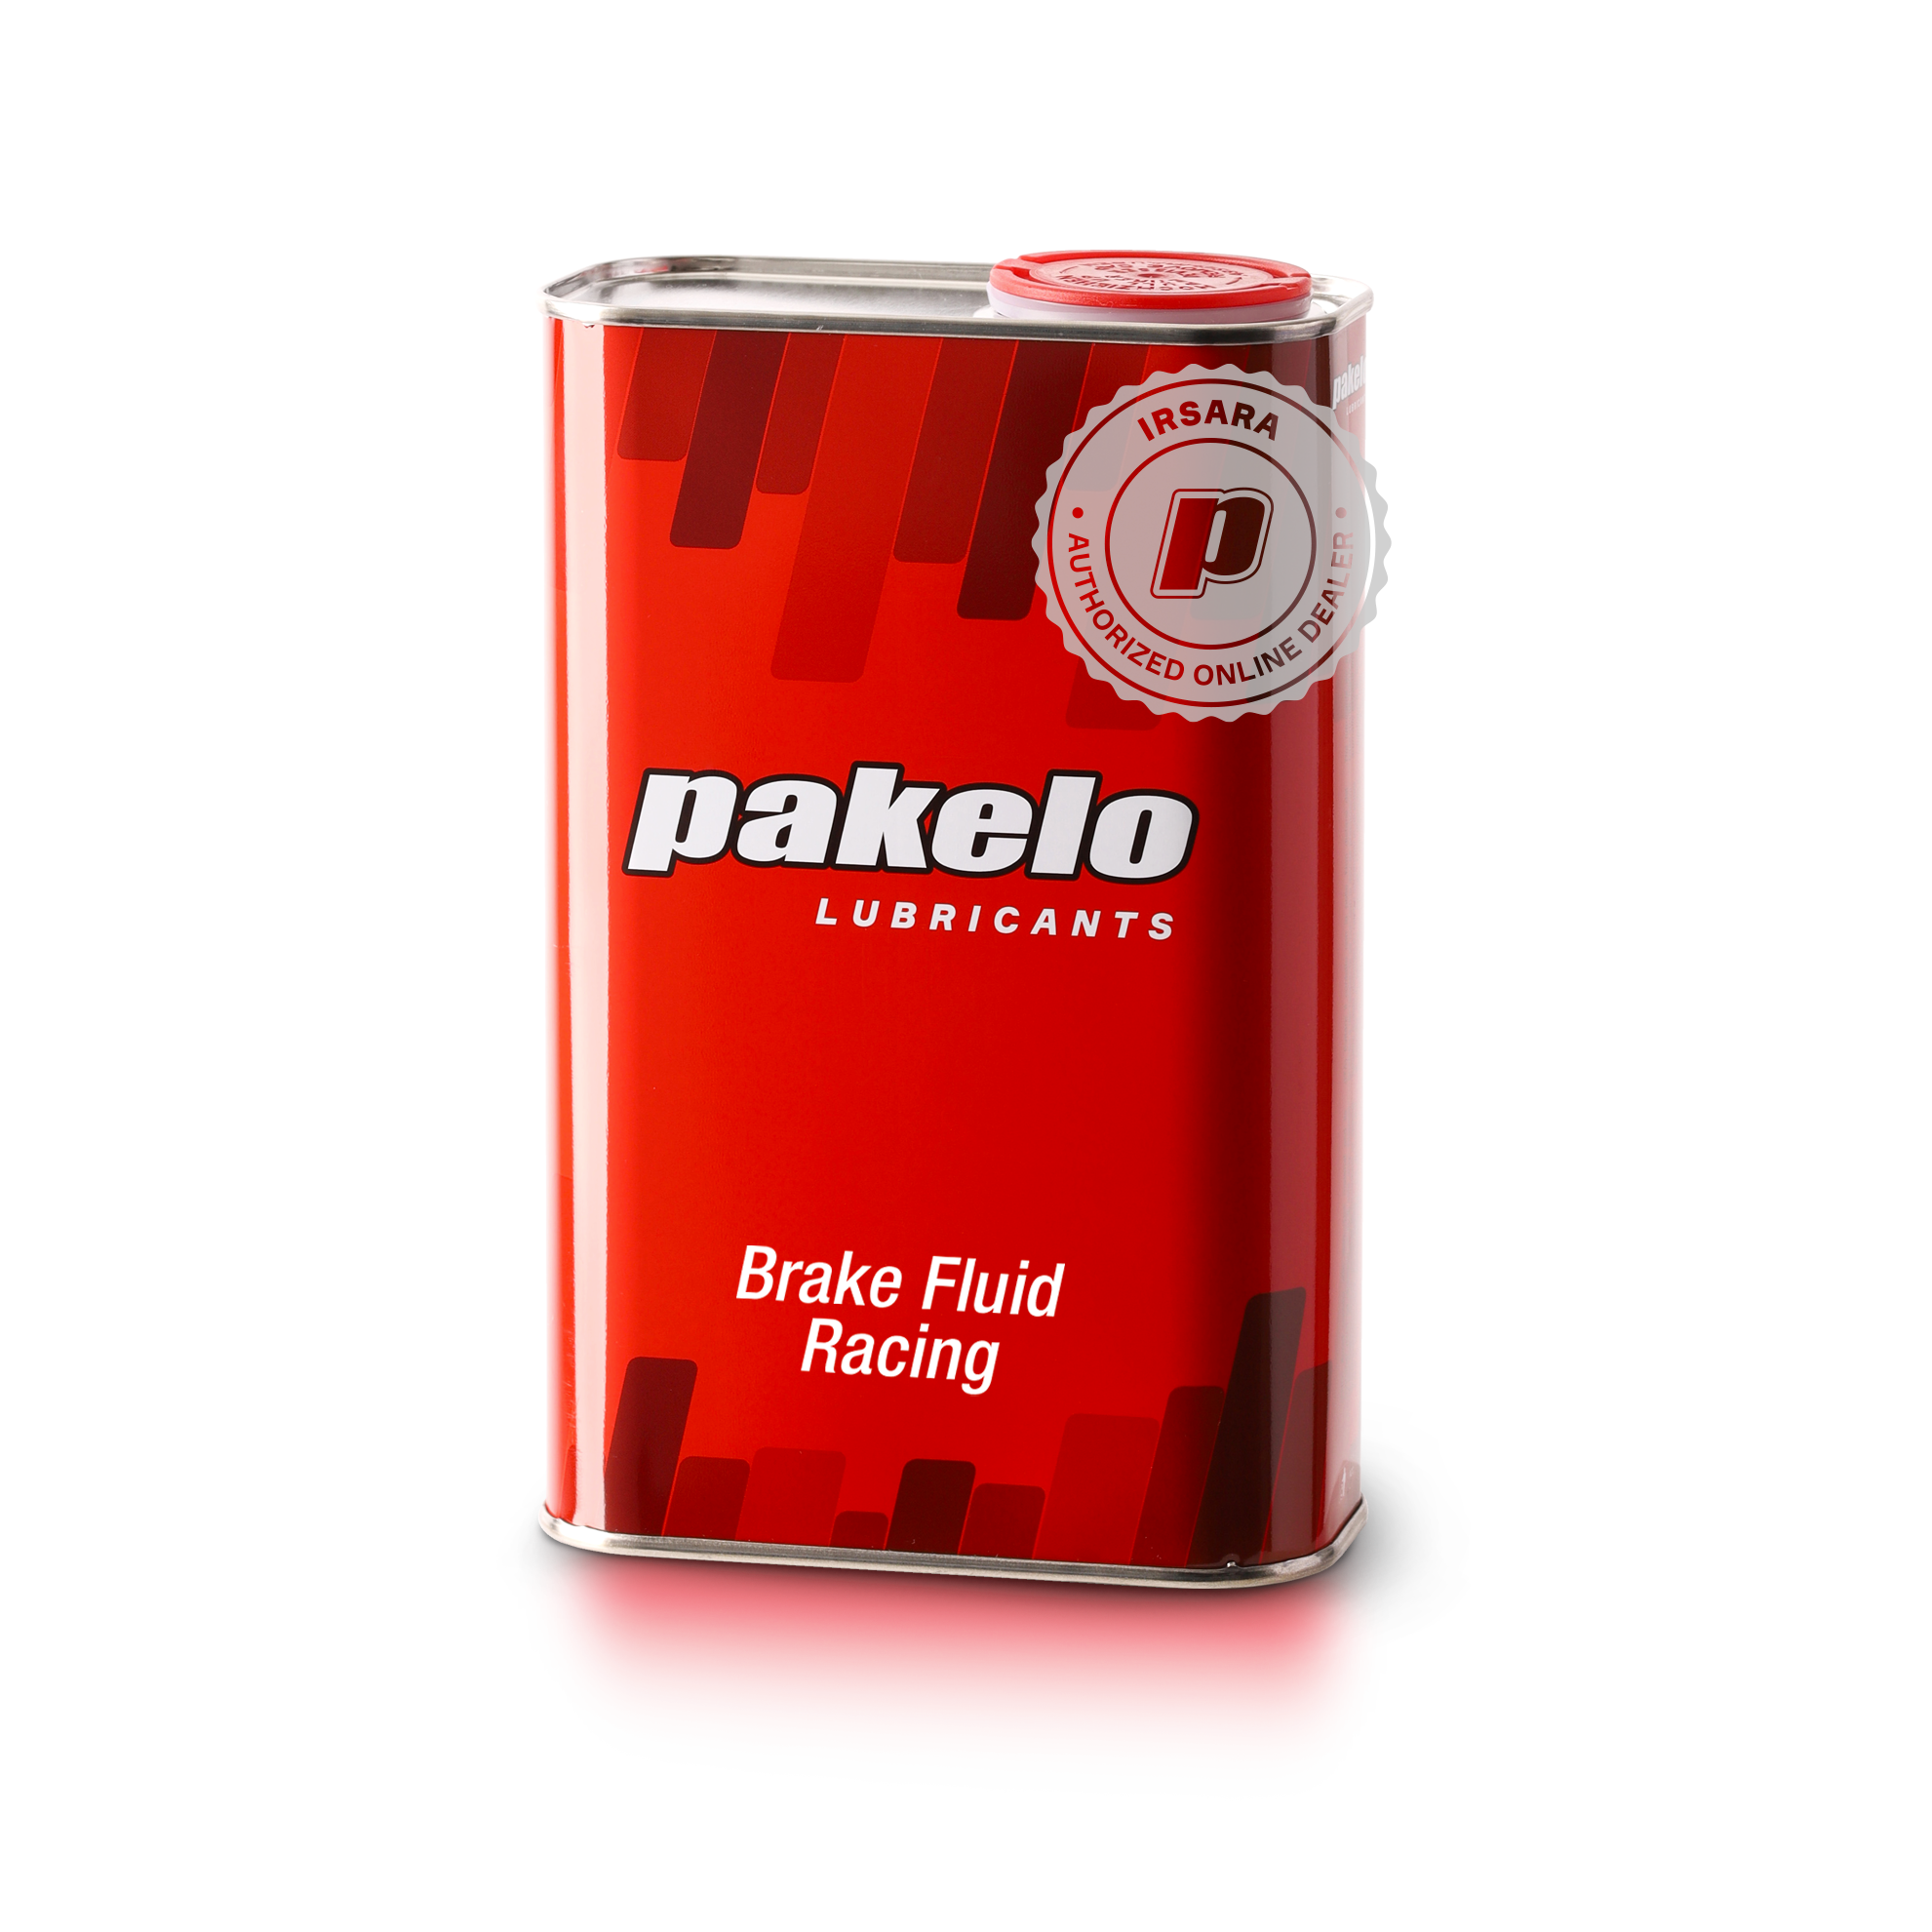 Pakelo Brake Fluid Racing (1L)